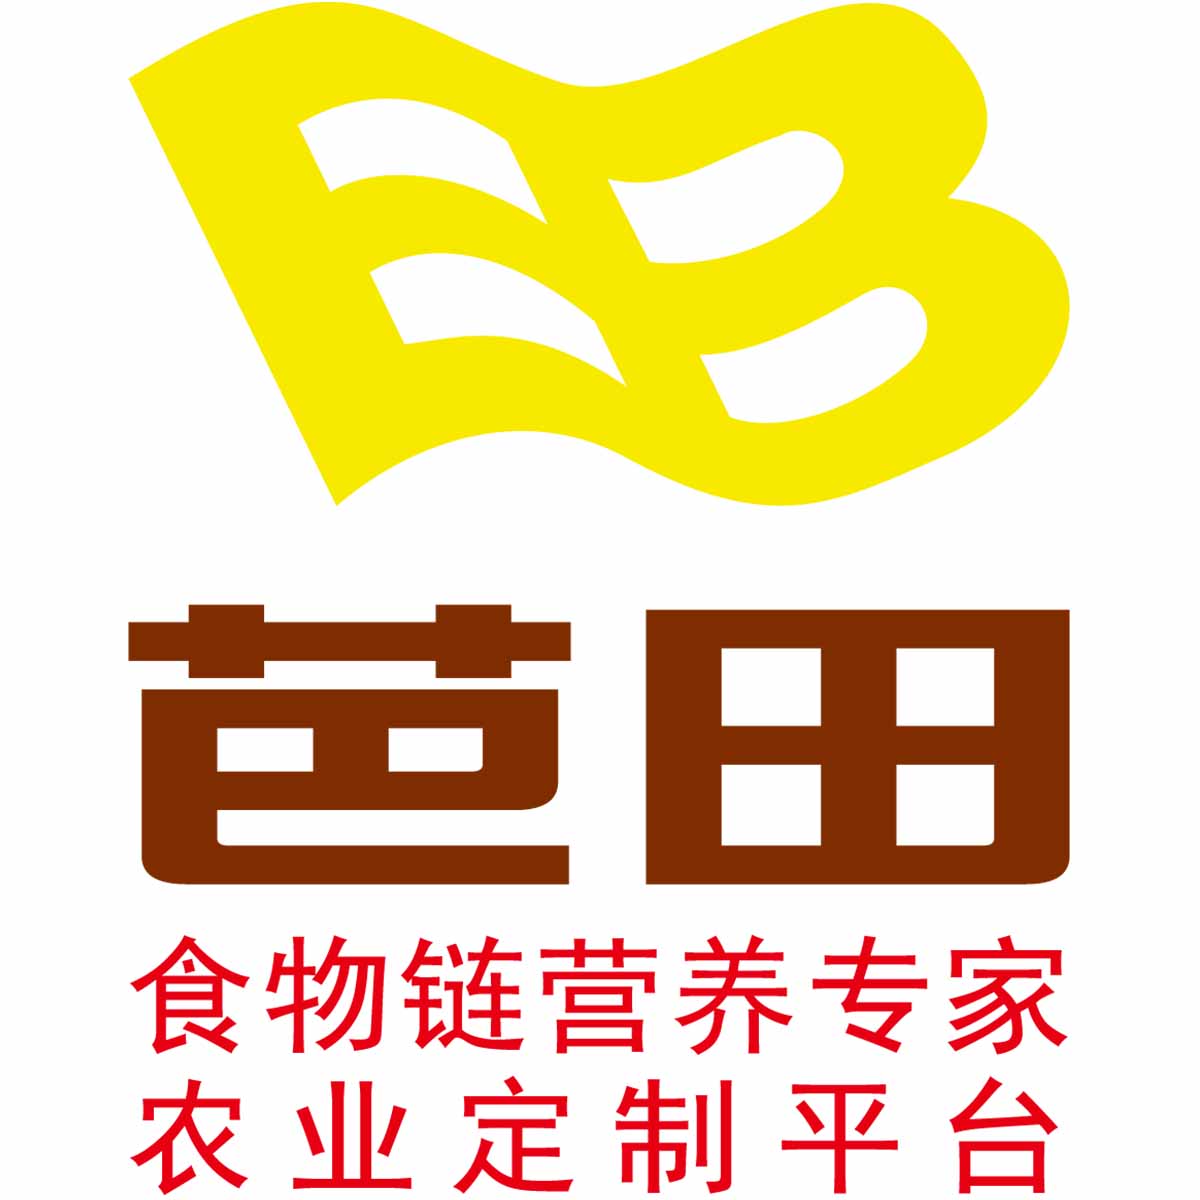 深圳芭田生态工程股份有限公司logo